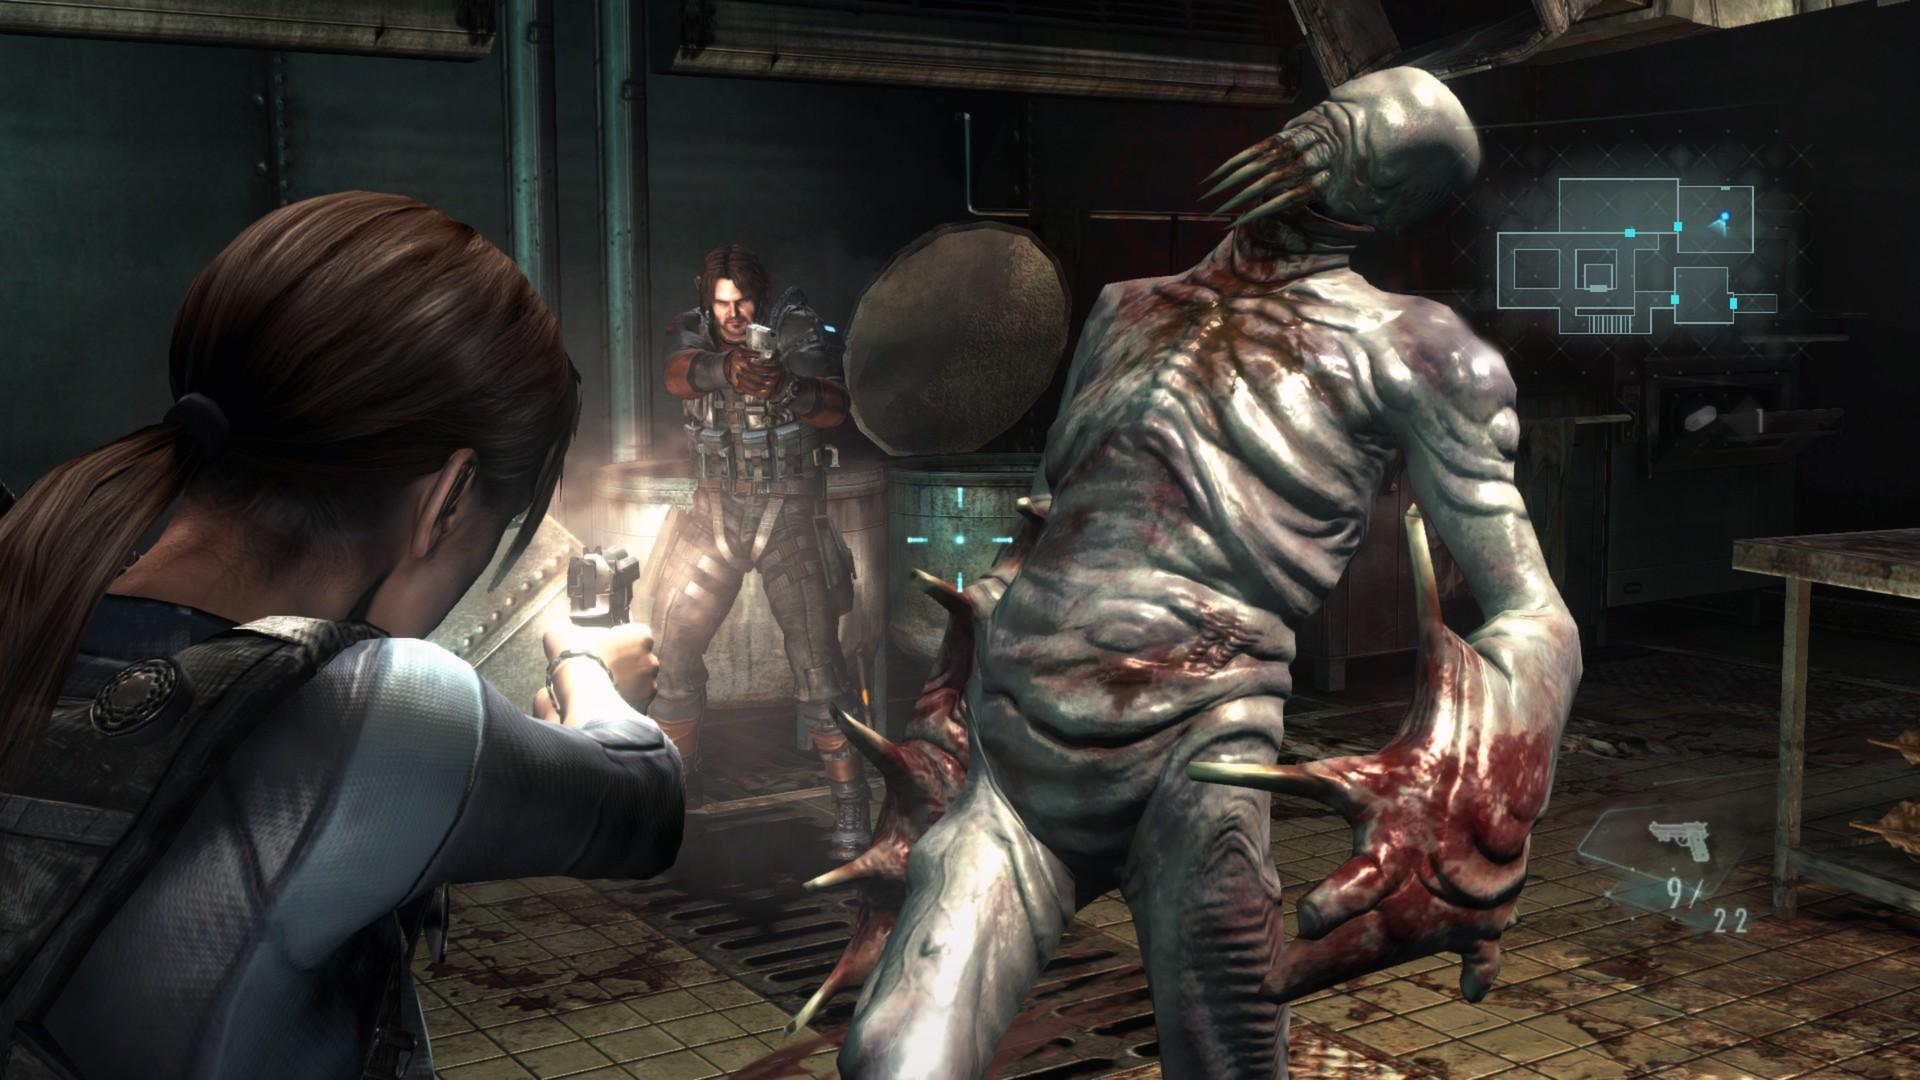 Screenshot №2 from game Resident Evil Revelations